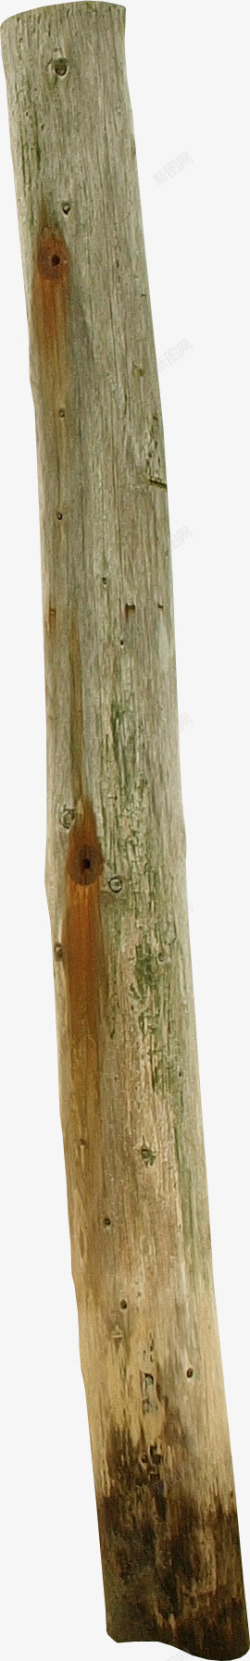 棕色木棒针棕色圆形木棒高清图片